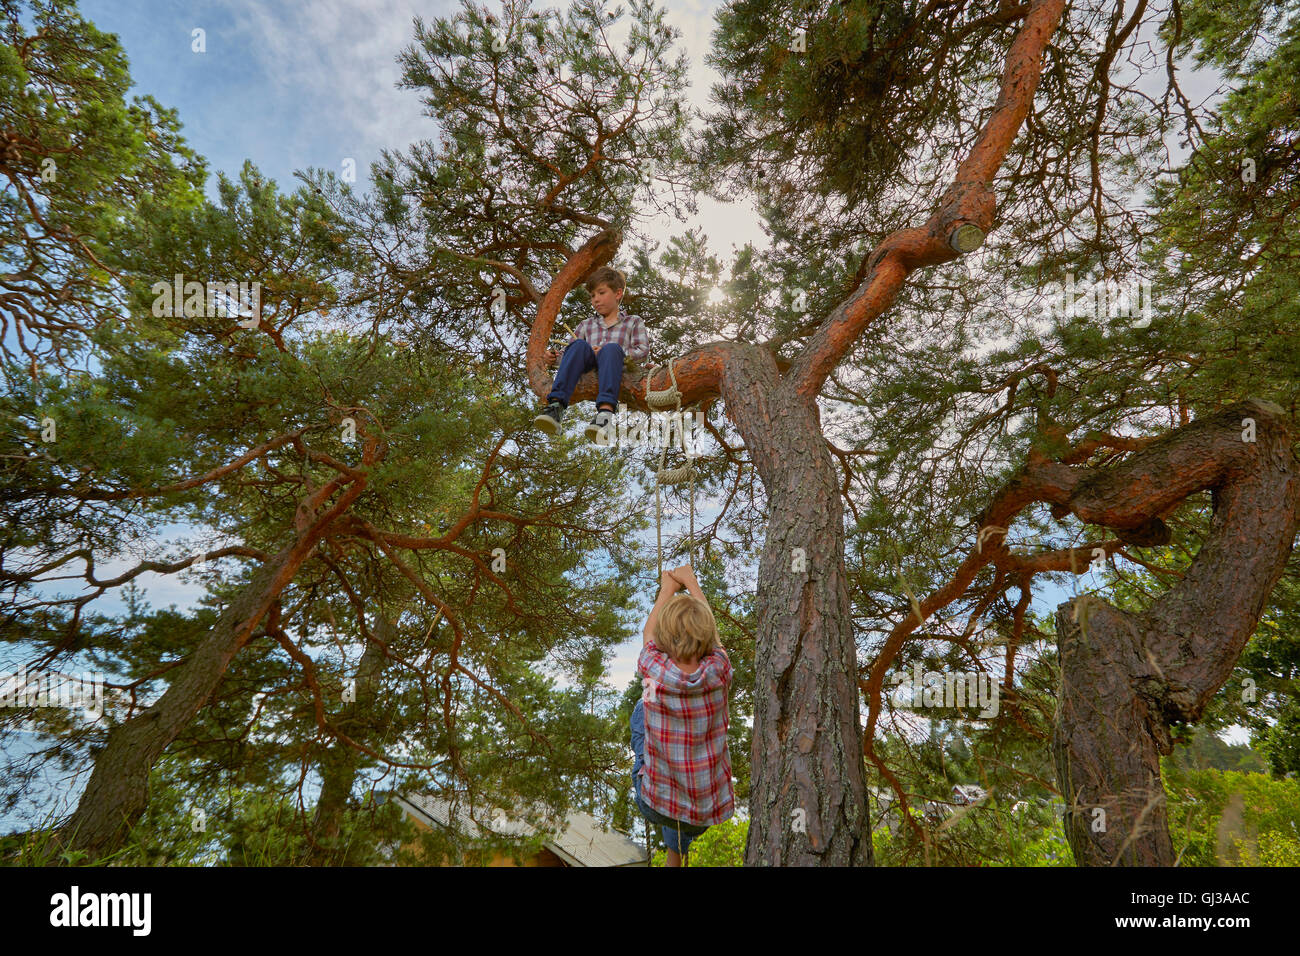 Kleiner Junge sitzt im Baum, seinem Freund Strickleiter auf den Baum klettern, um ihn zu begleiten Stockfoto